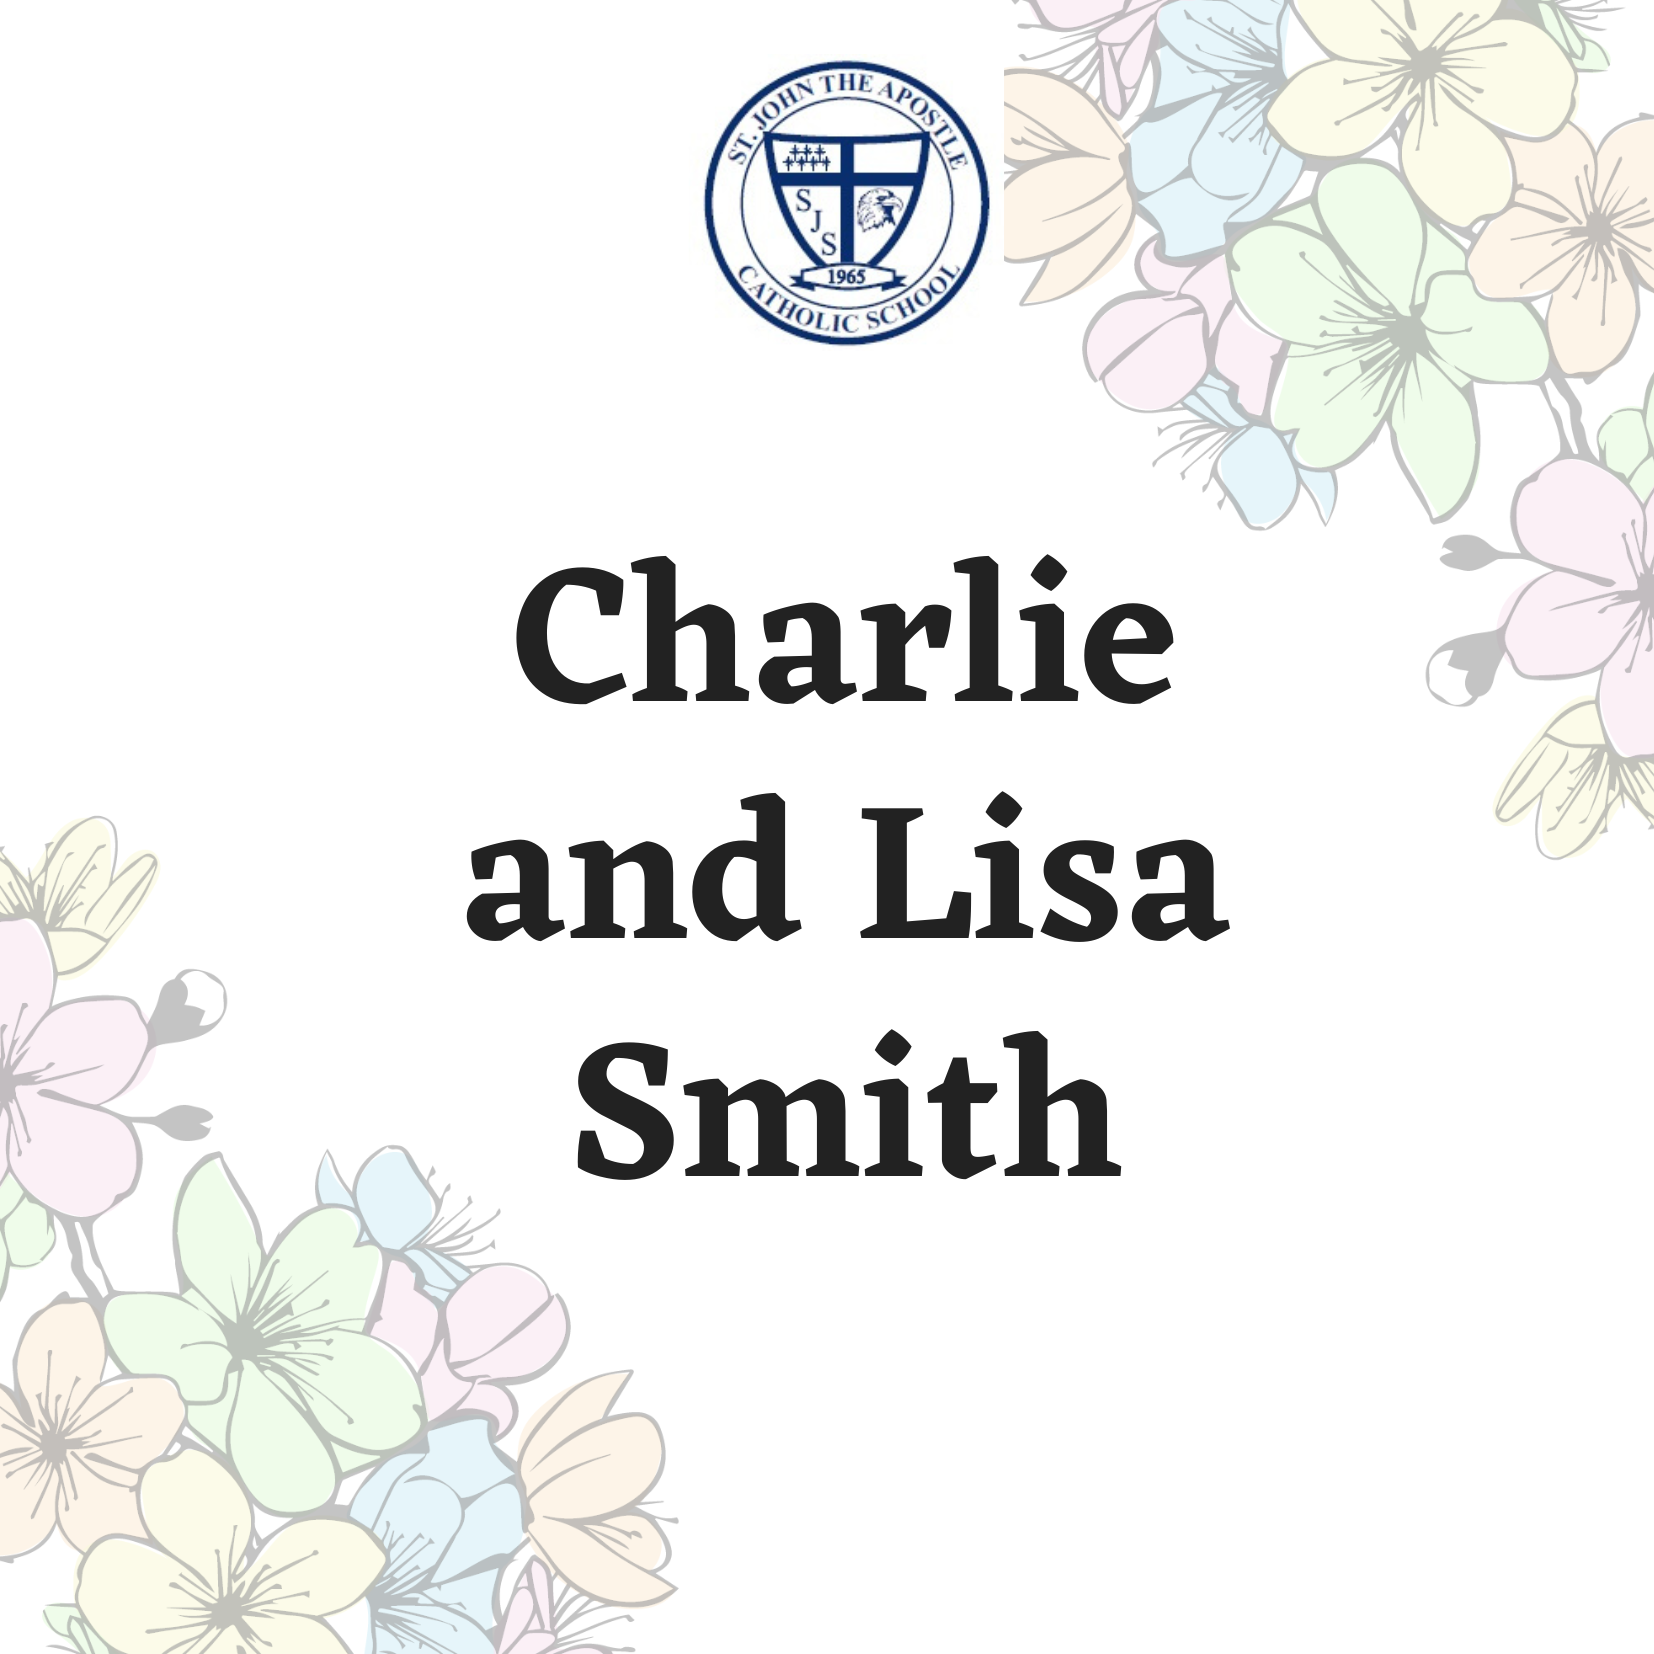 Charlie and Lisa Smith